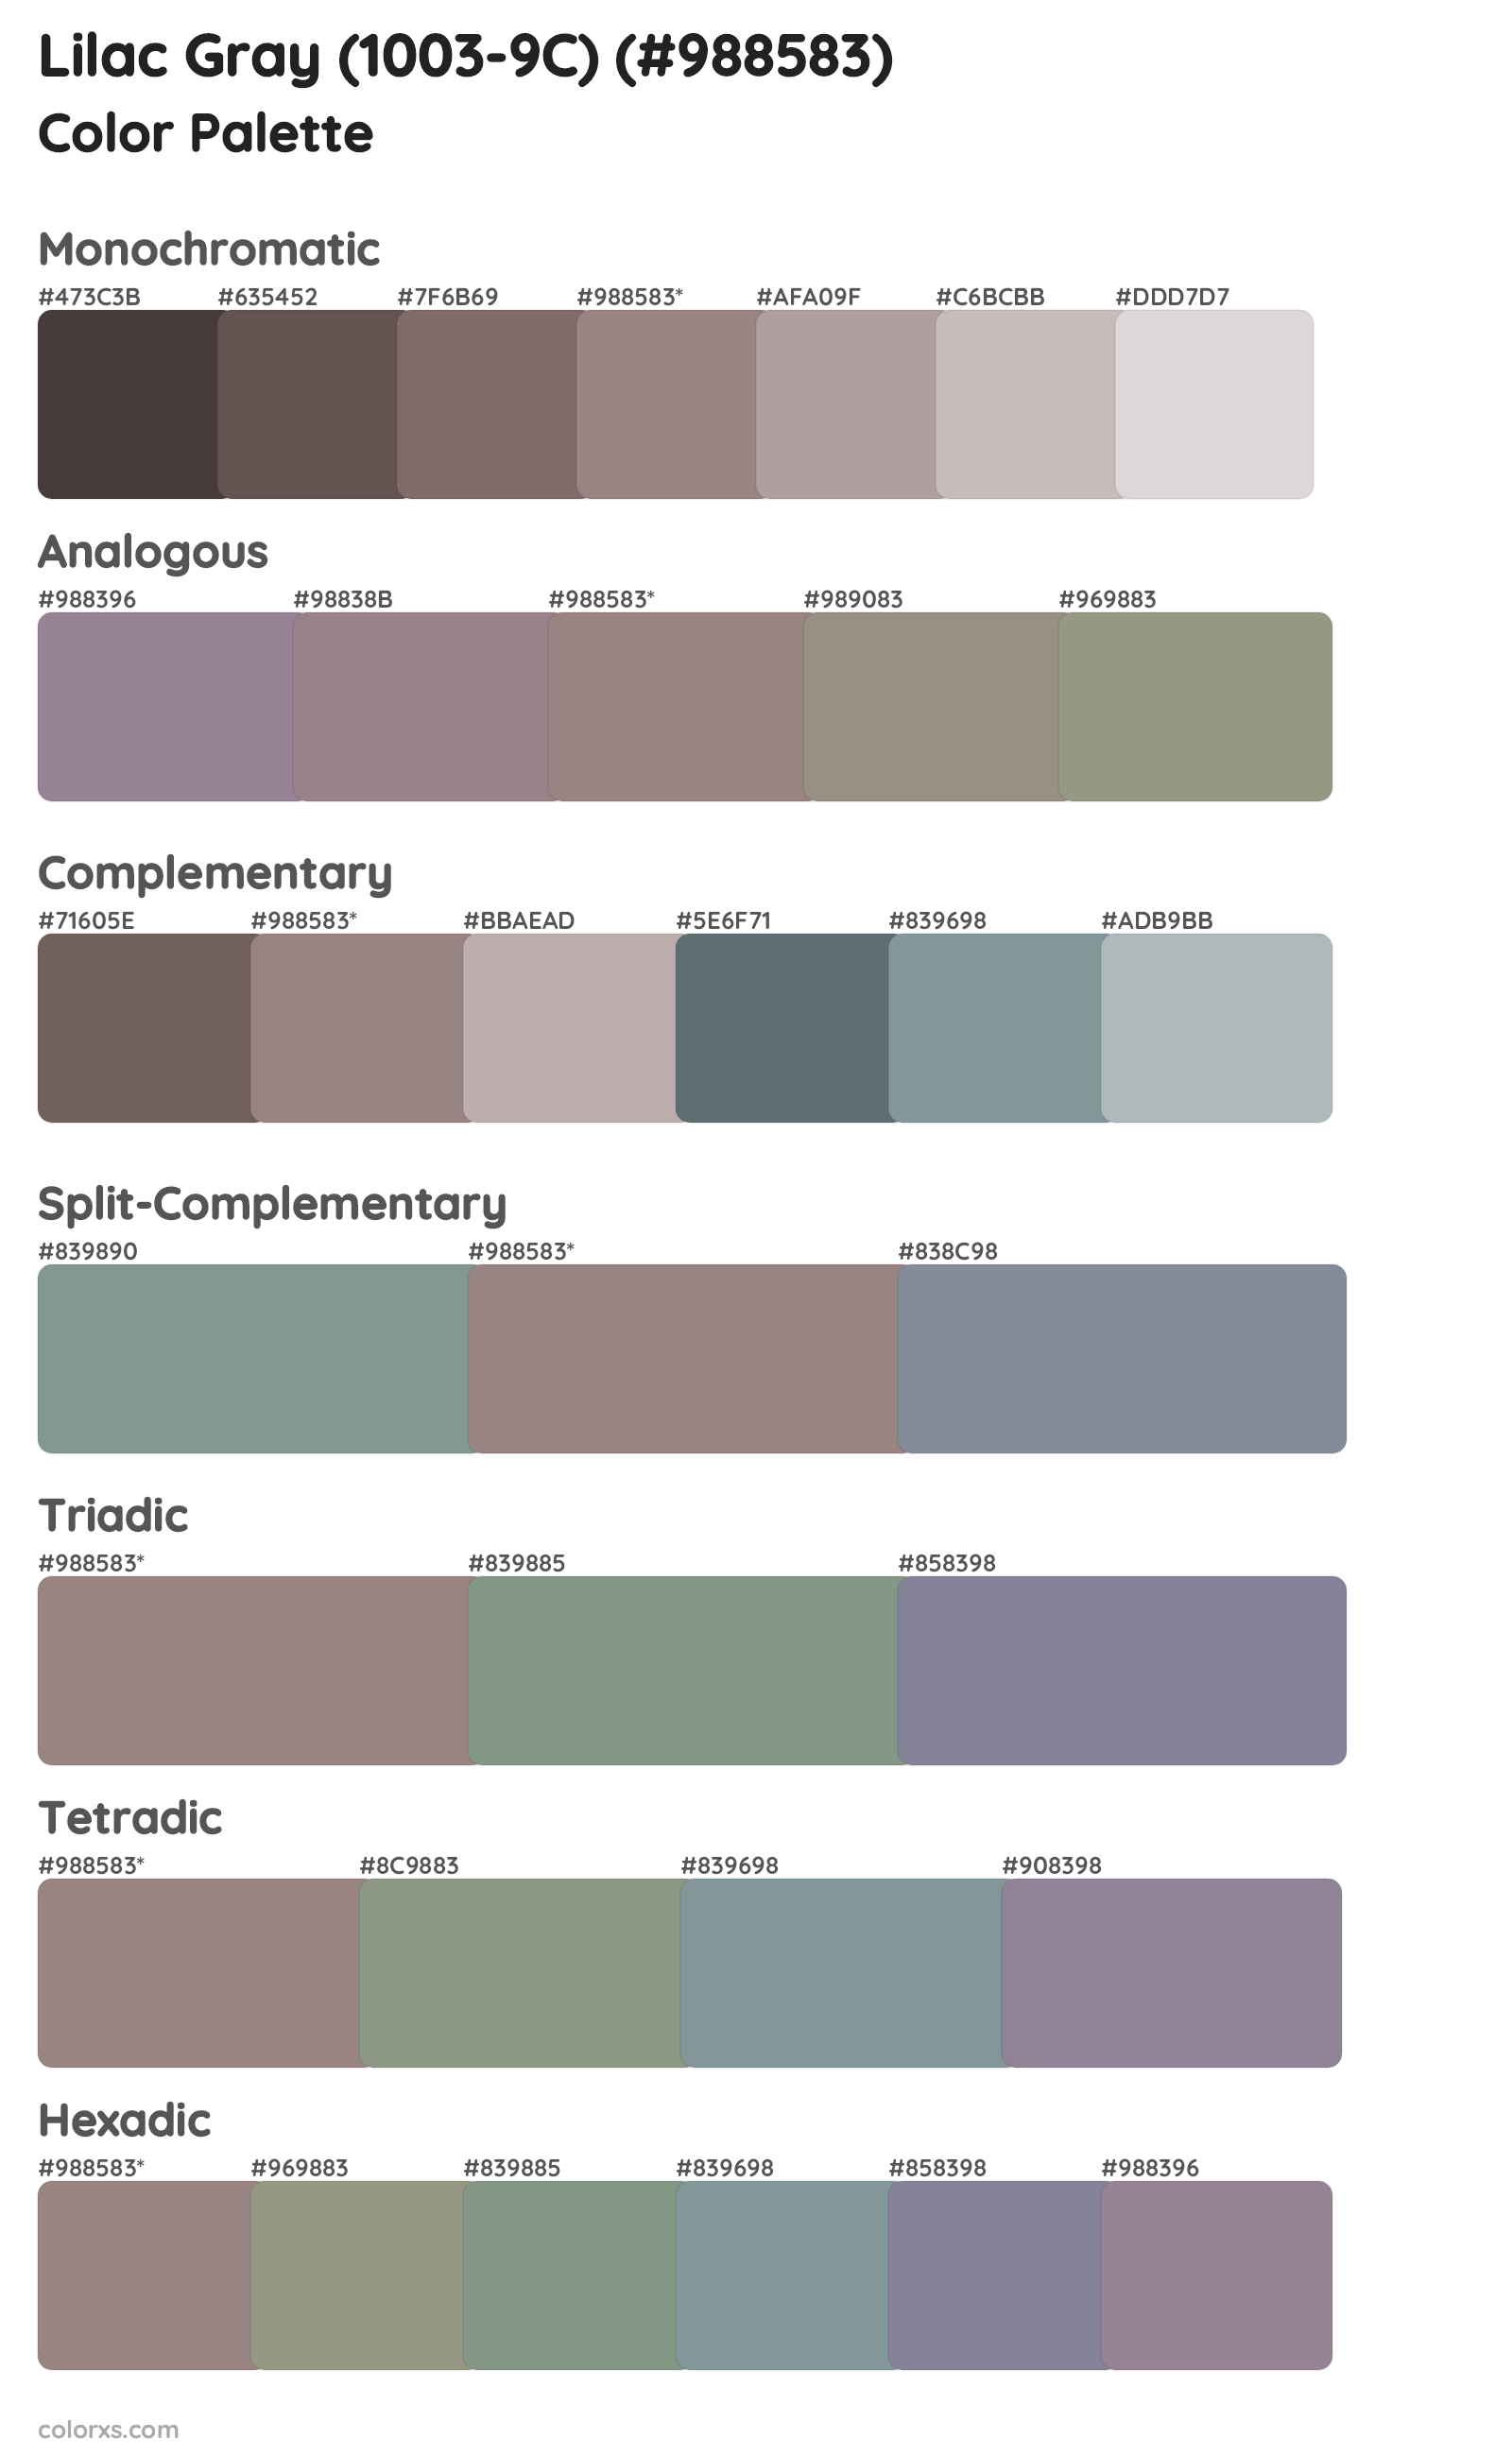 Lilac Gray (1003-9C) Color Scheme Palettes